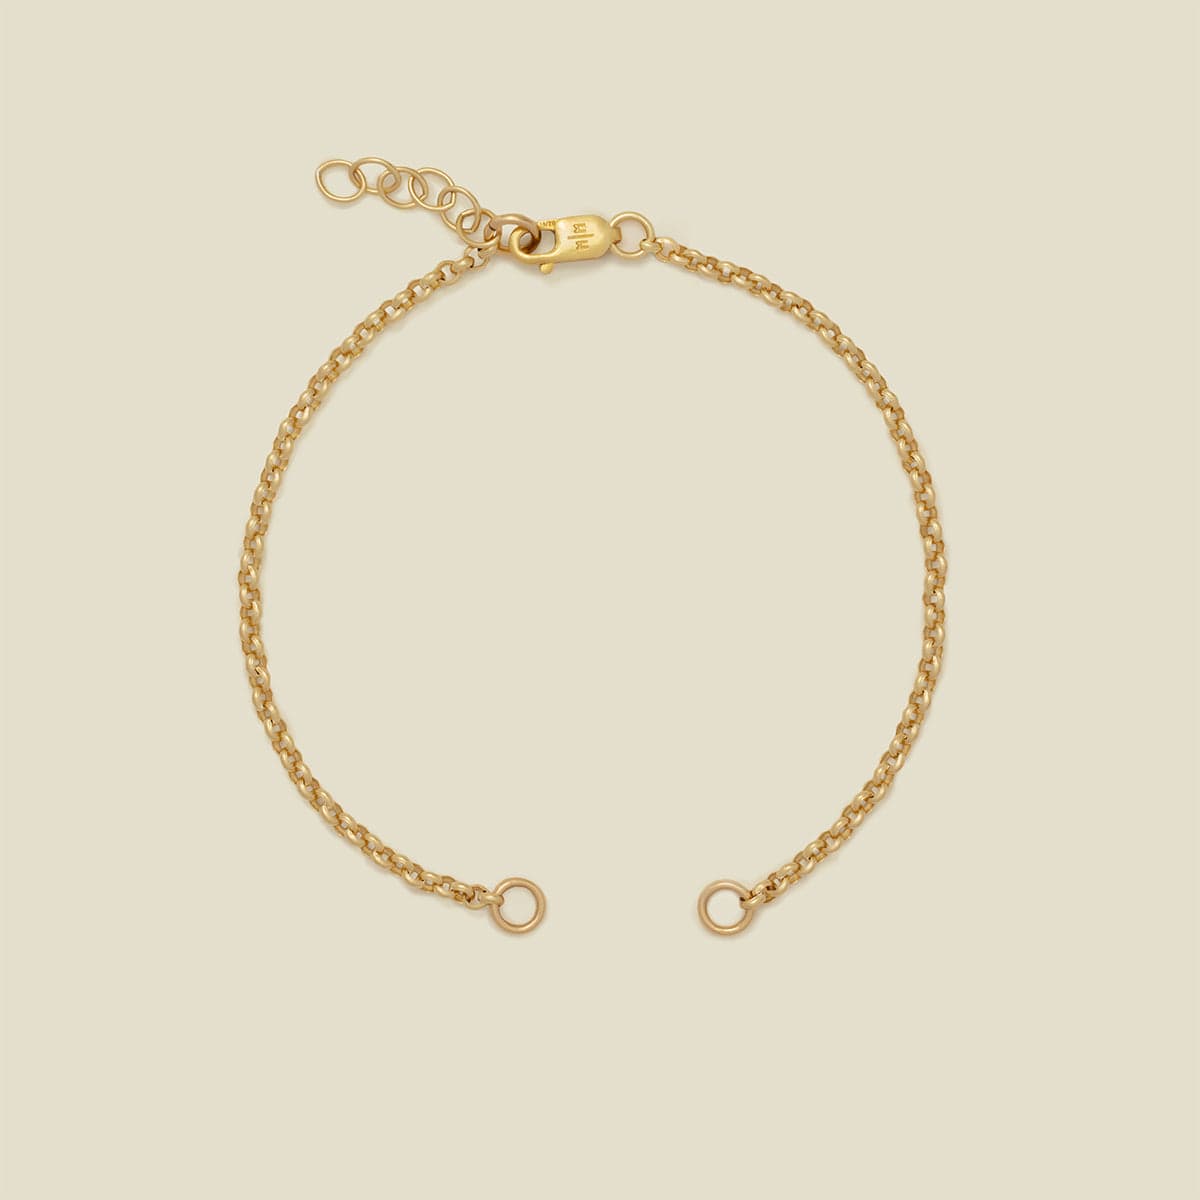 Rolo Charm Bracelet Gold Filled / Without Link Lock / 6" Bracelet